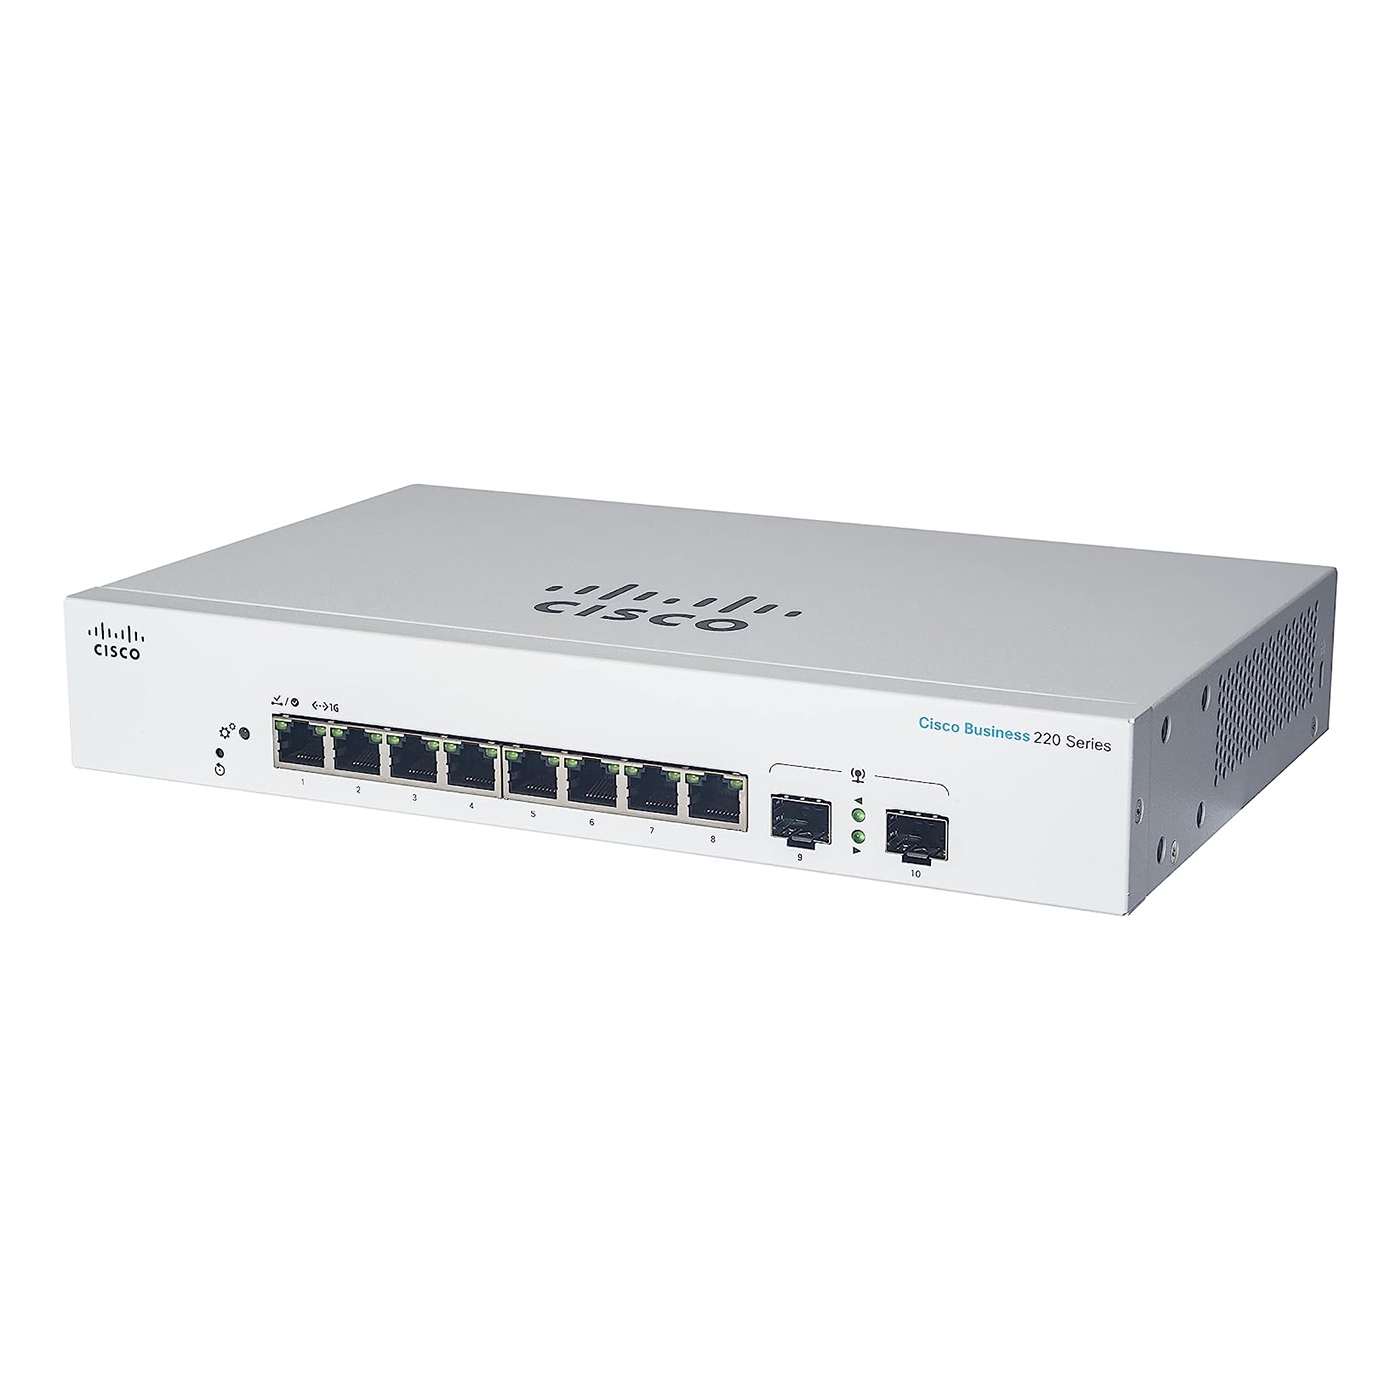 Cisco CBS220-8T-E-2G 10 Port Gigabit Smart Switch